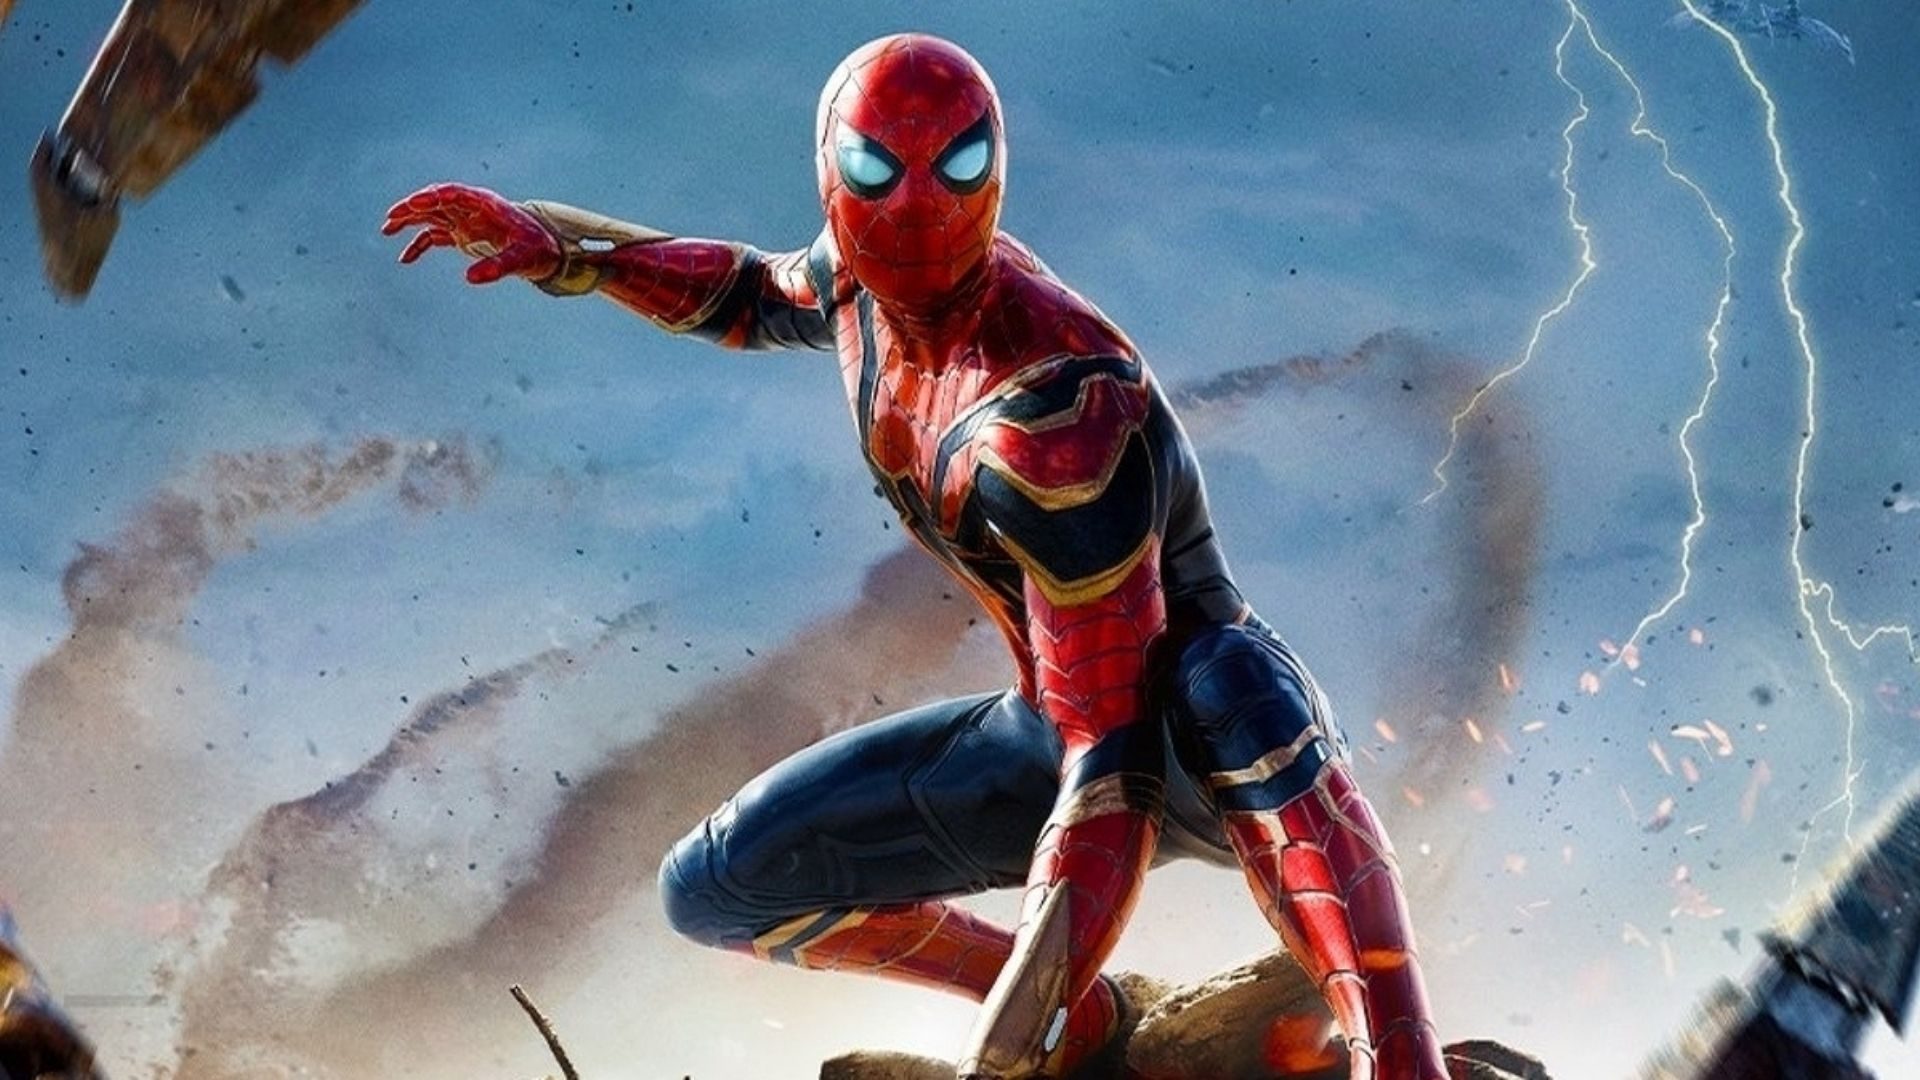 Homem-Aranha 3: Mão invisível chama a atenção dos fãs em novo trailer